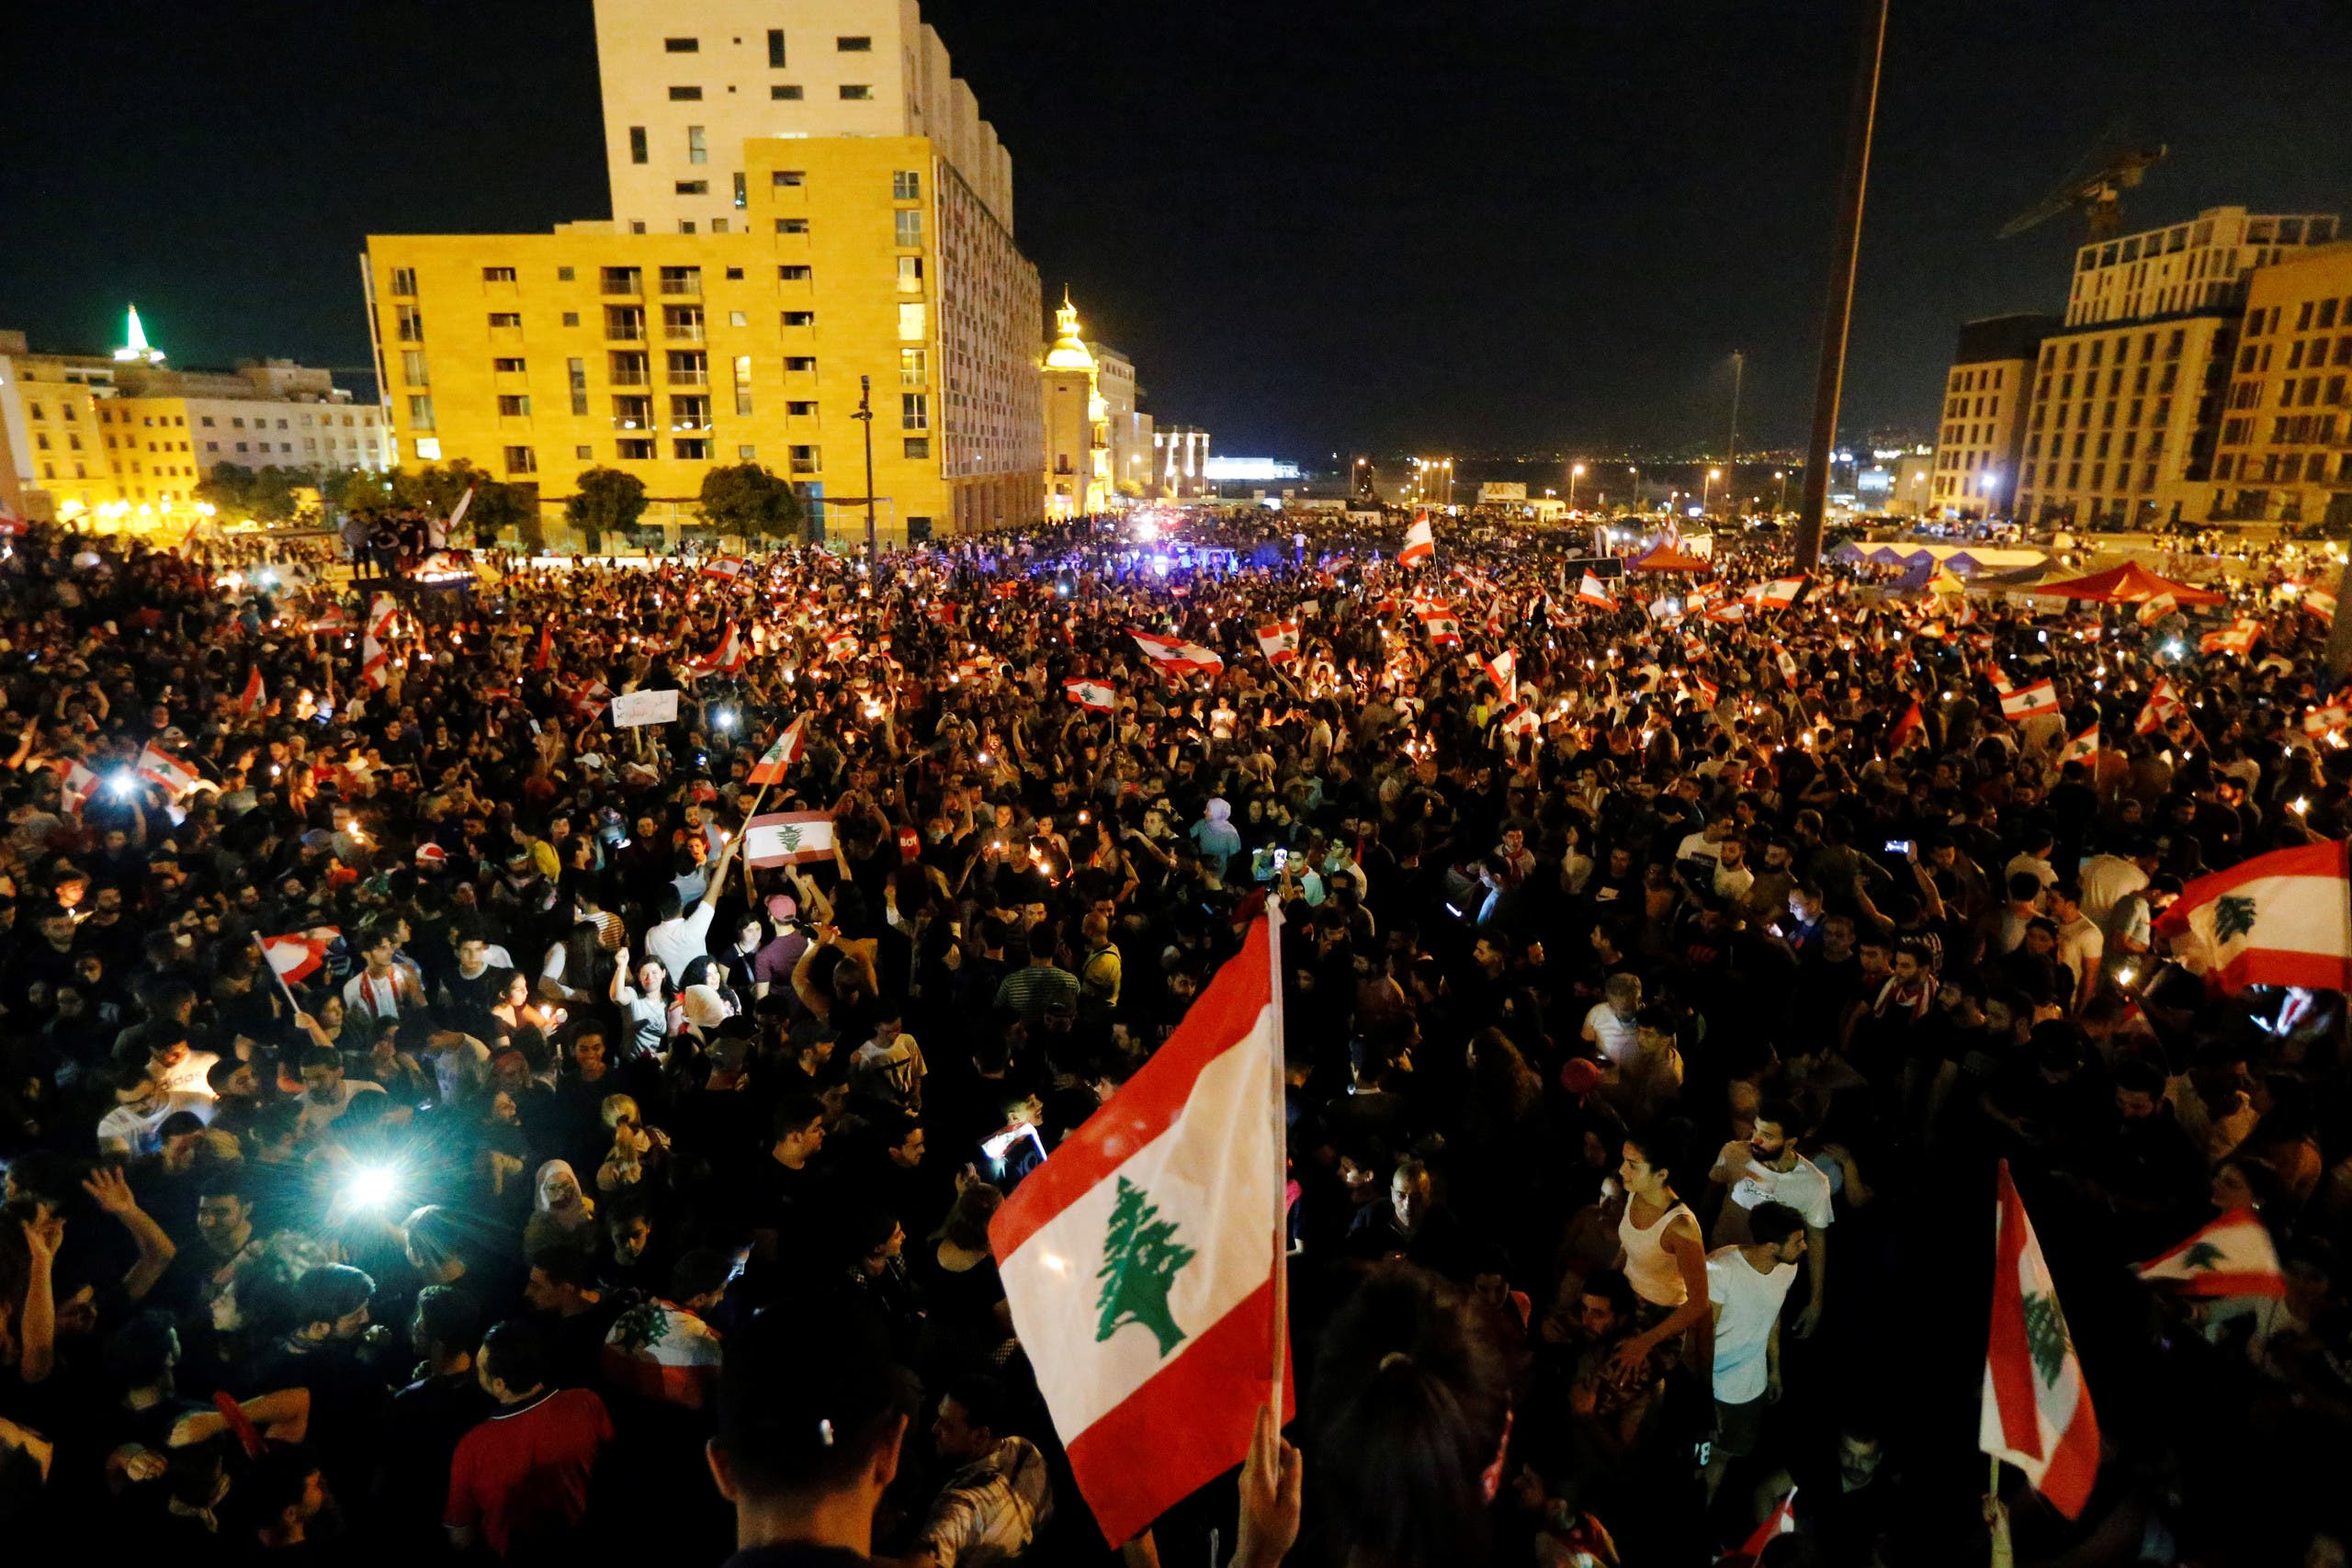 دعوات للتظاهر والاعتصام بكافة المدن اللبنانية